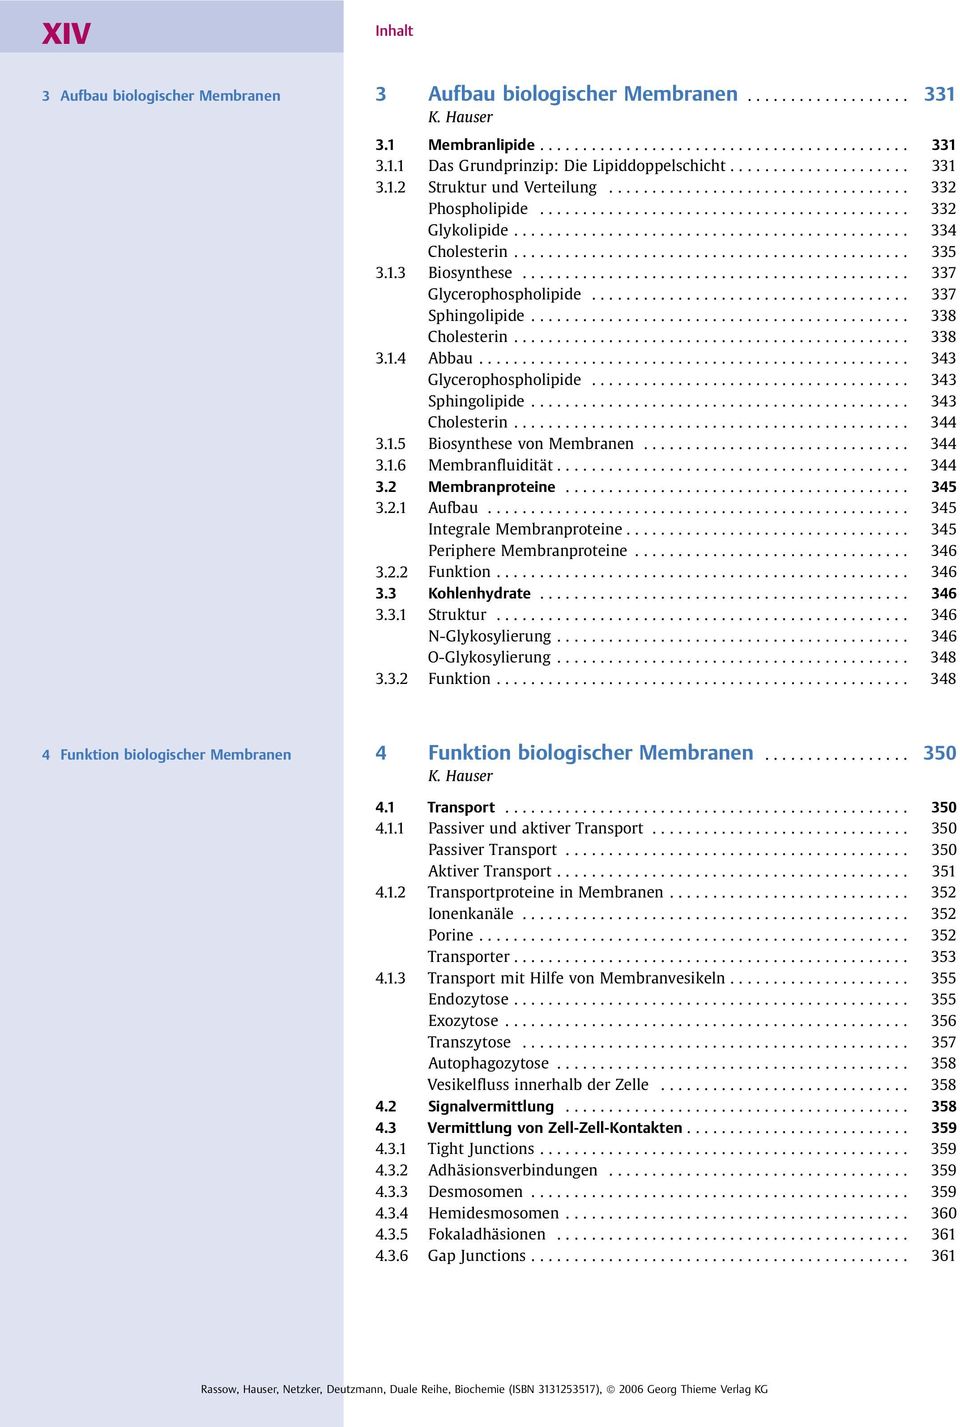 .. 343 Sphingolipide... 343 Cholesterin... 344 3.1.5 Biosynthese von Membranen... 344 3.1.6 Membranfluidität... 344 3.2 Membranproteine... 345 3.2.1 Aufbau... 345 Integrale Membranproteine.